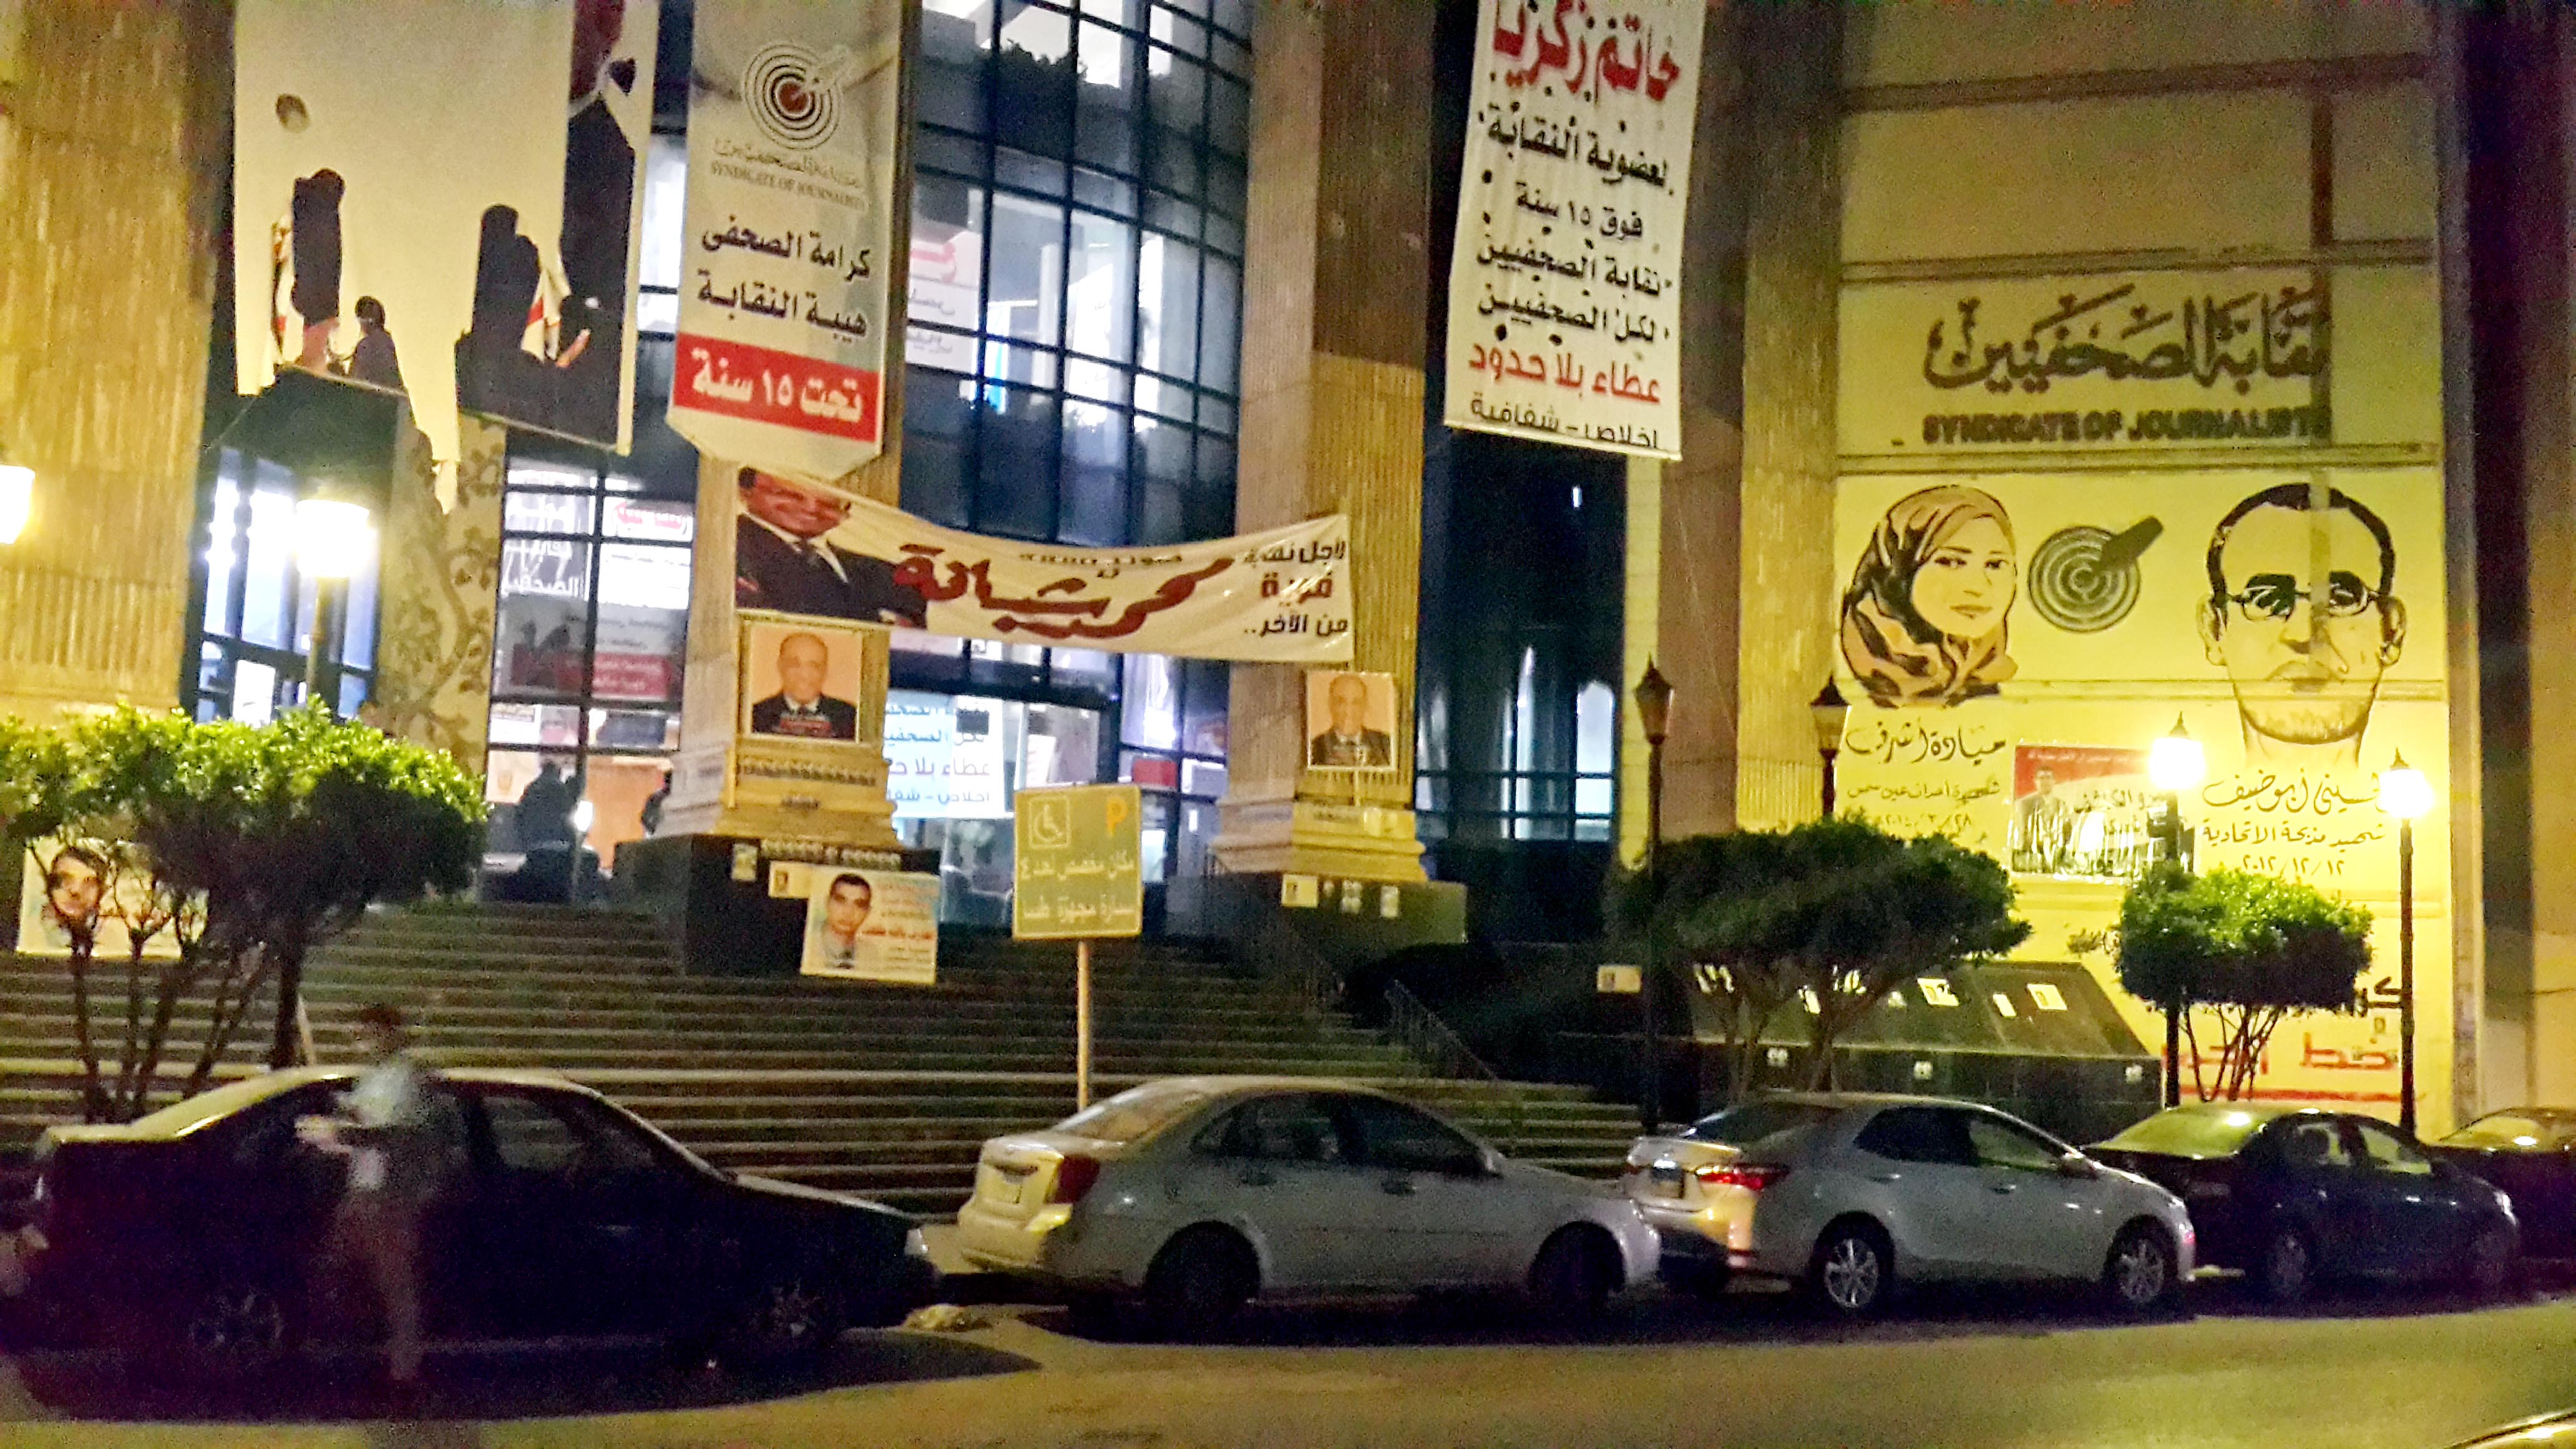 مقر نقابة الصحفيين المصريين وجولة انتخابية جديدة ( تصوير حسام علي - إندبندنت عربية)